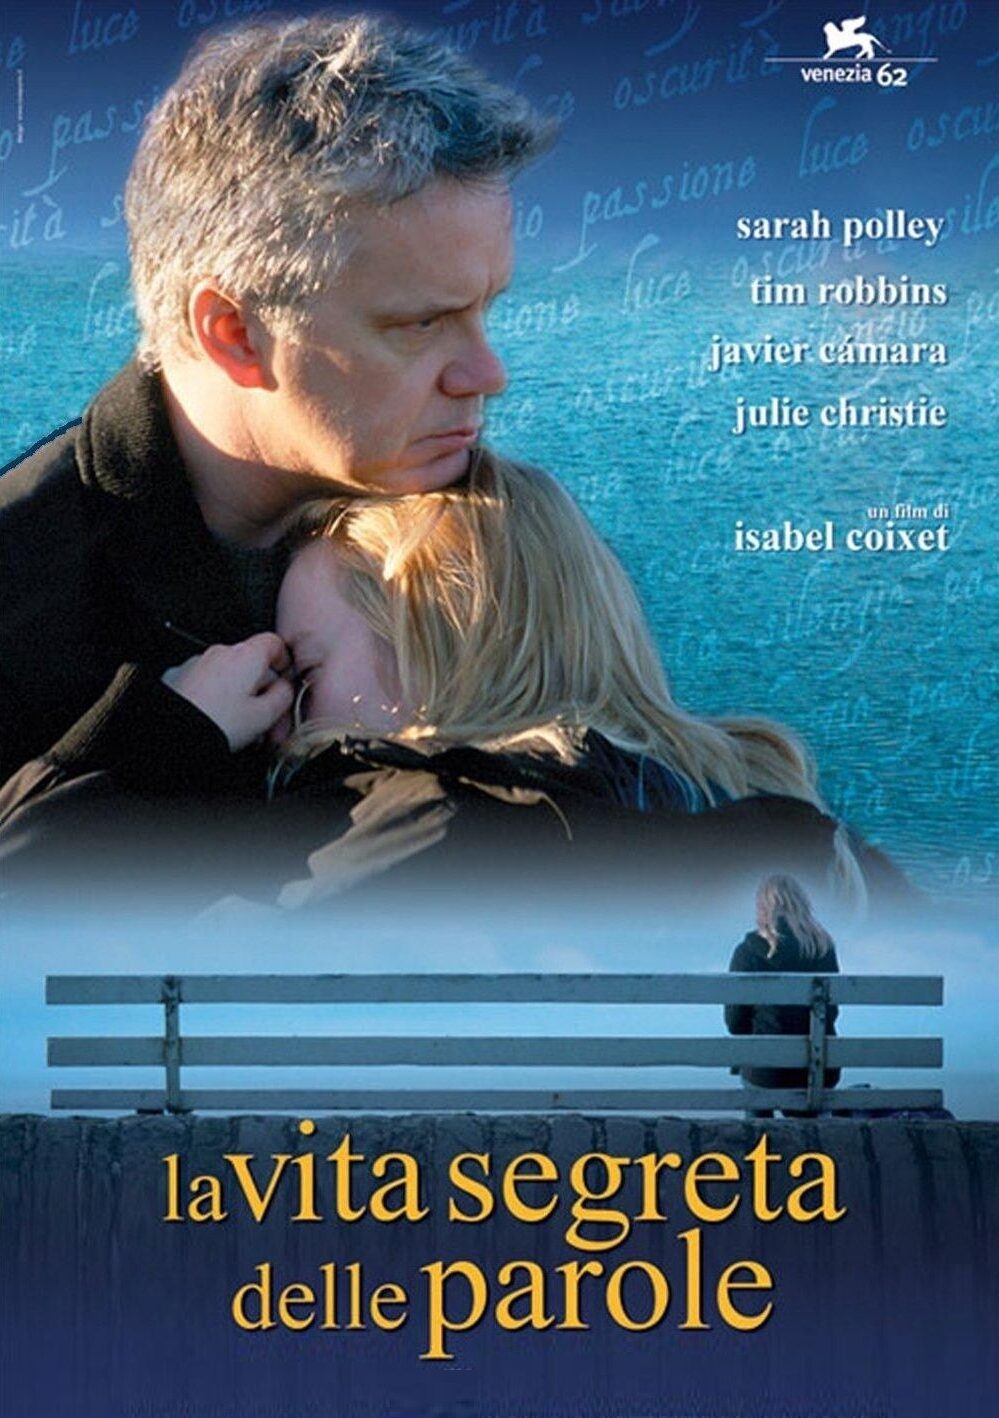 La vita segreta delle parole (2006)